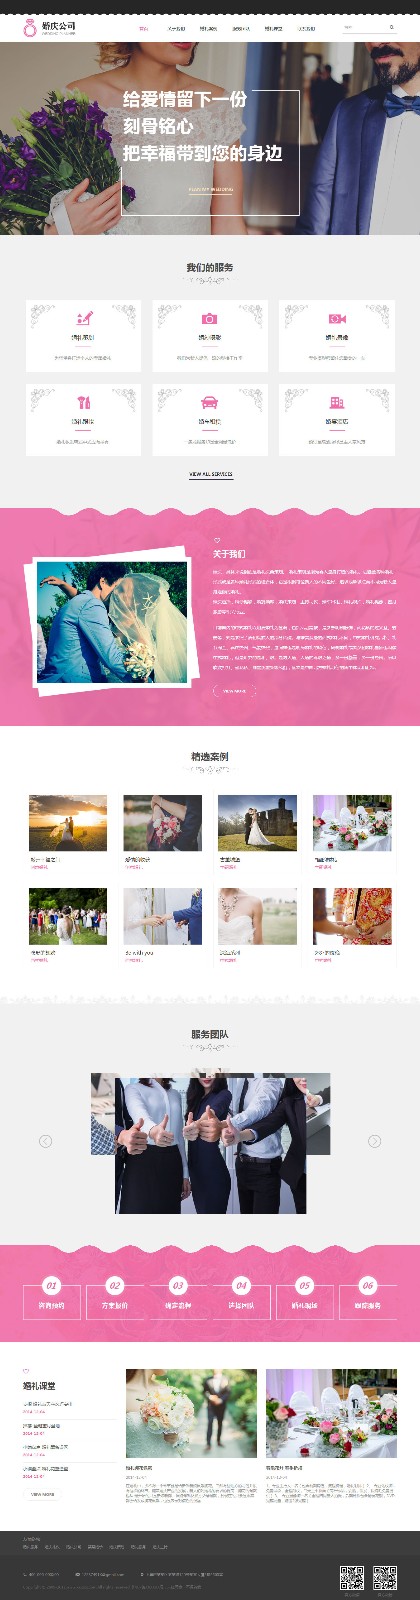 婚礼、婚庆网站模板-wedding-1012963